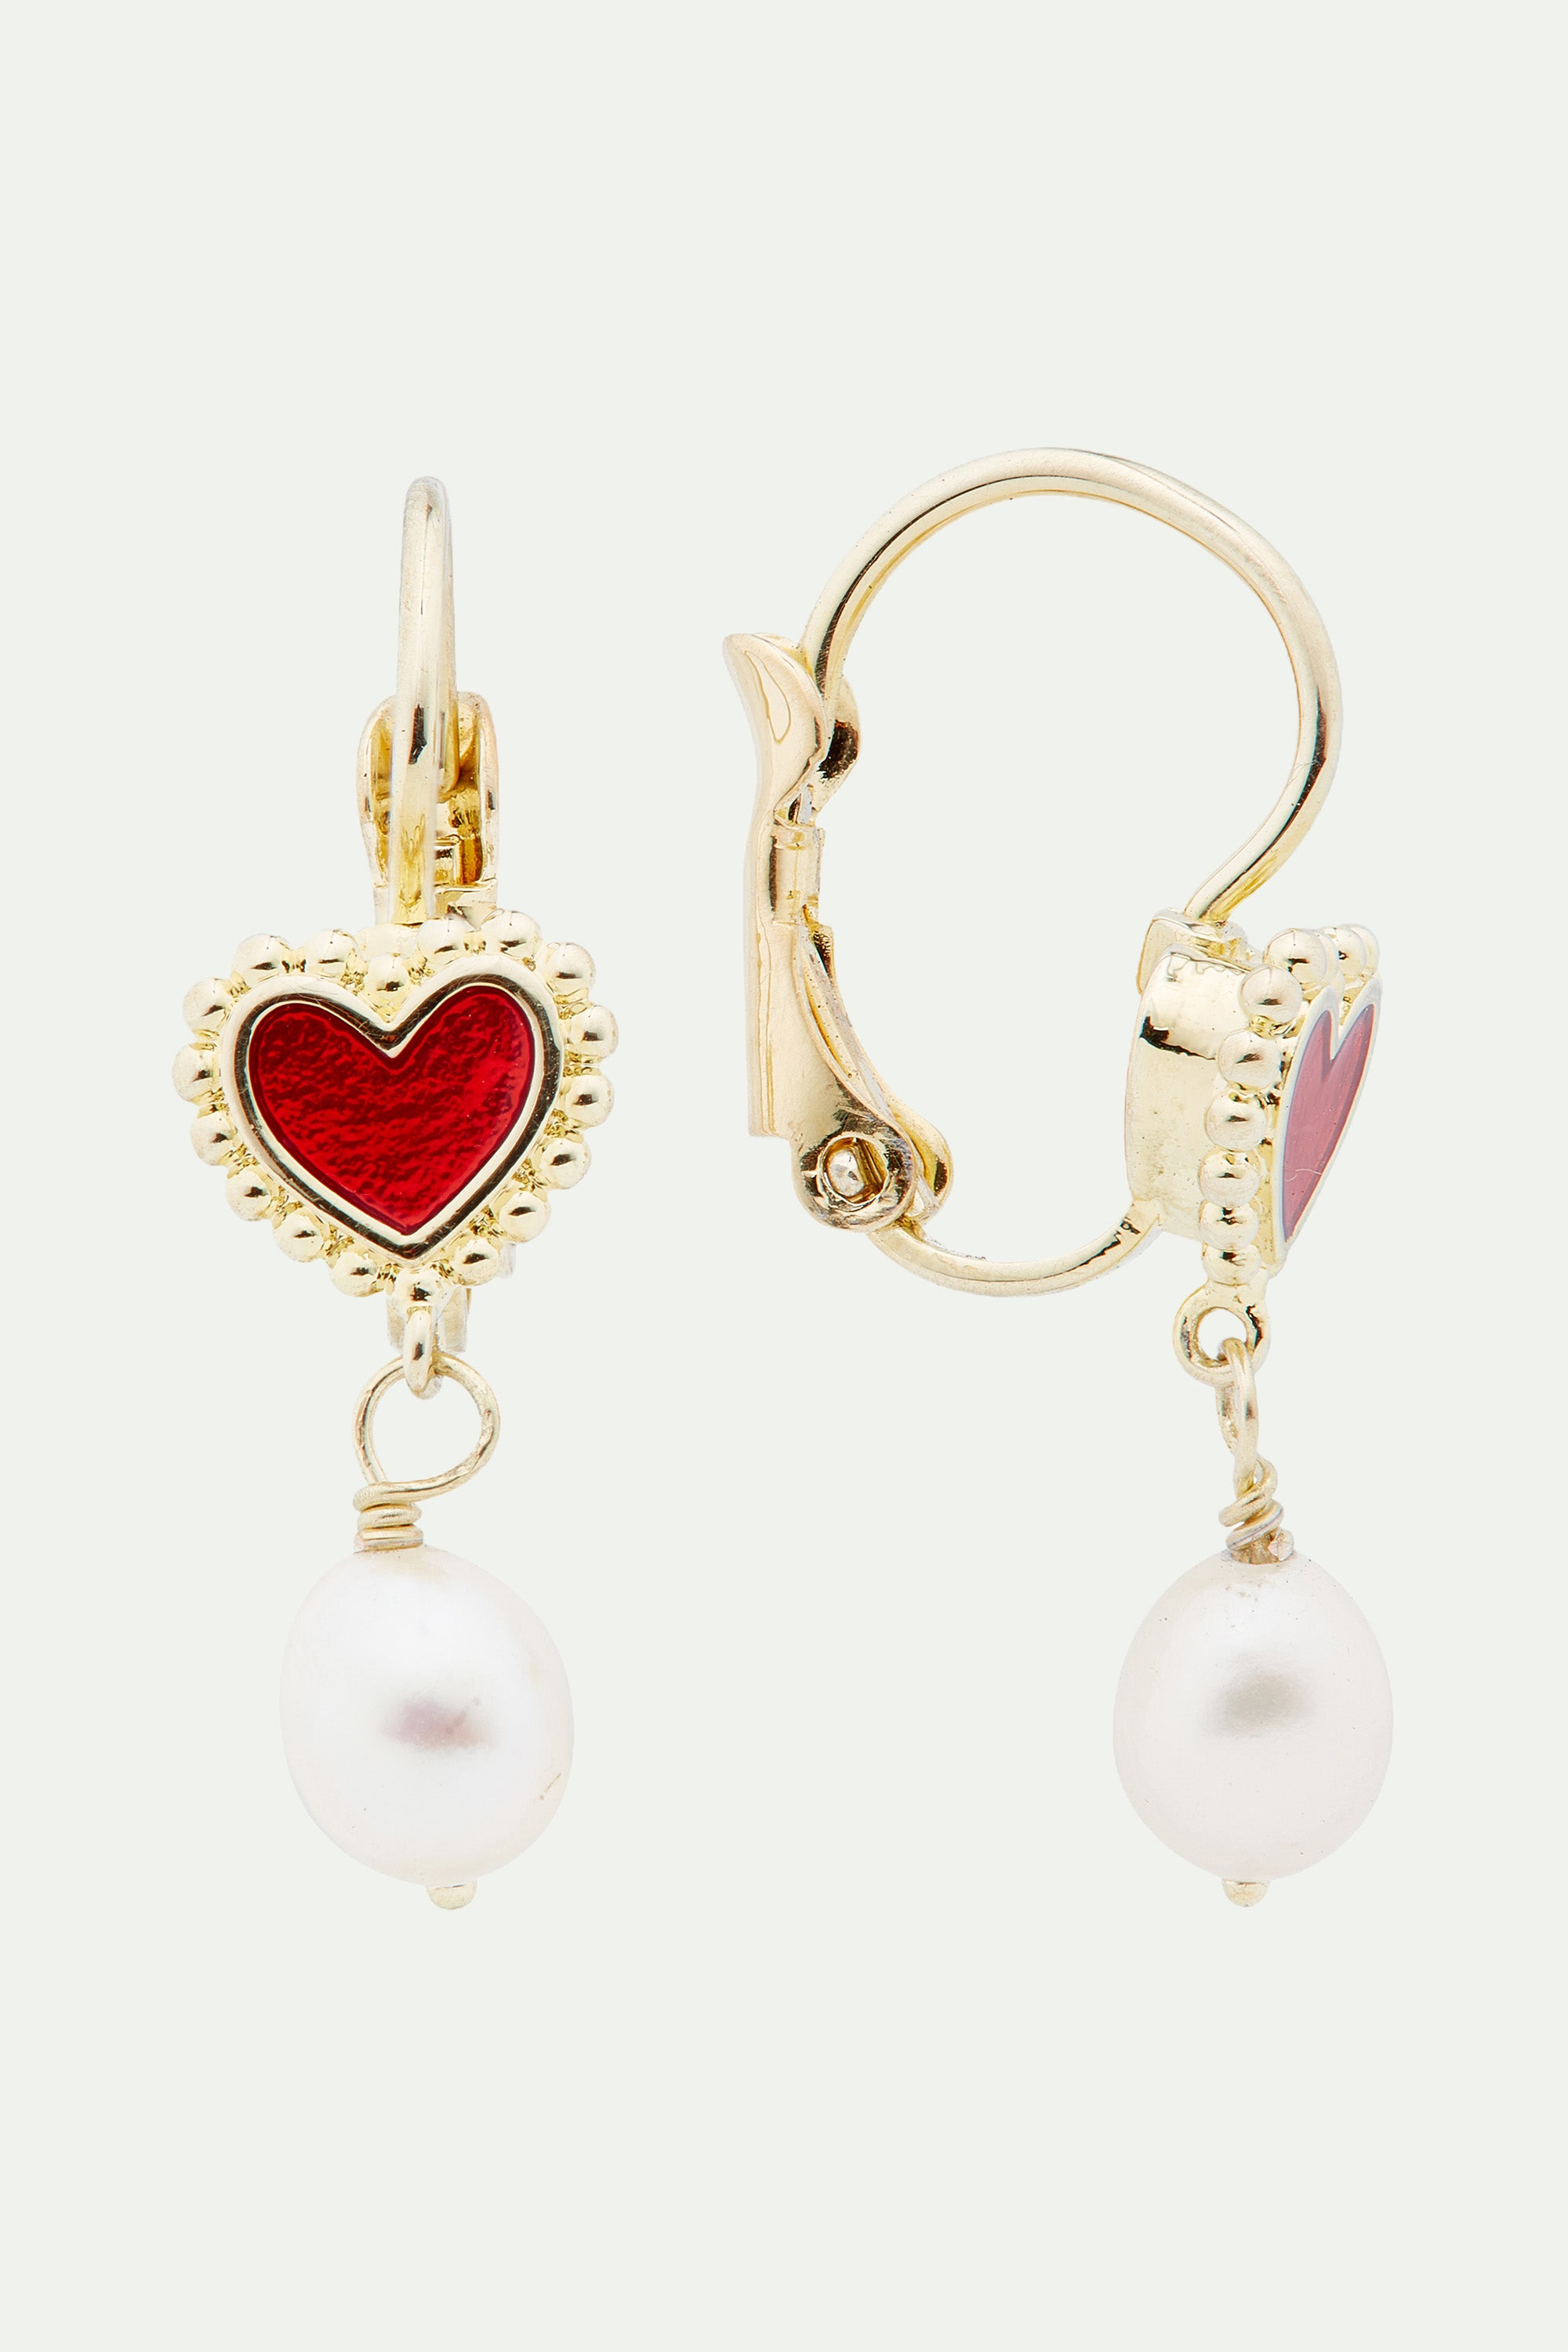 Heart and cultured pearl sleeper earrings